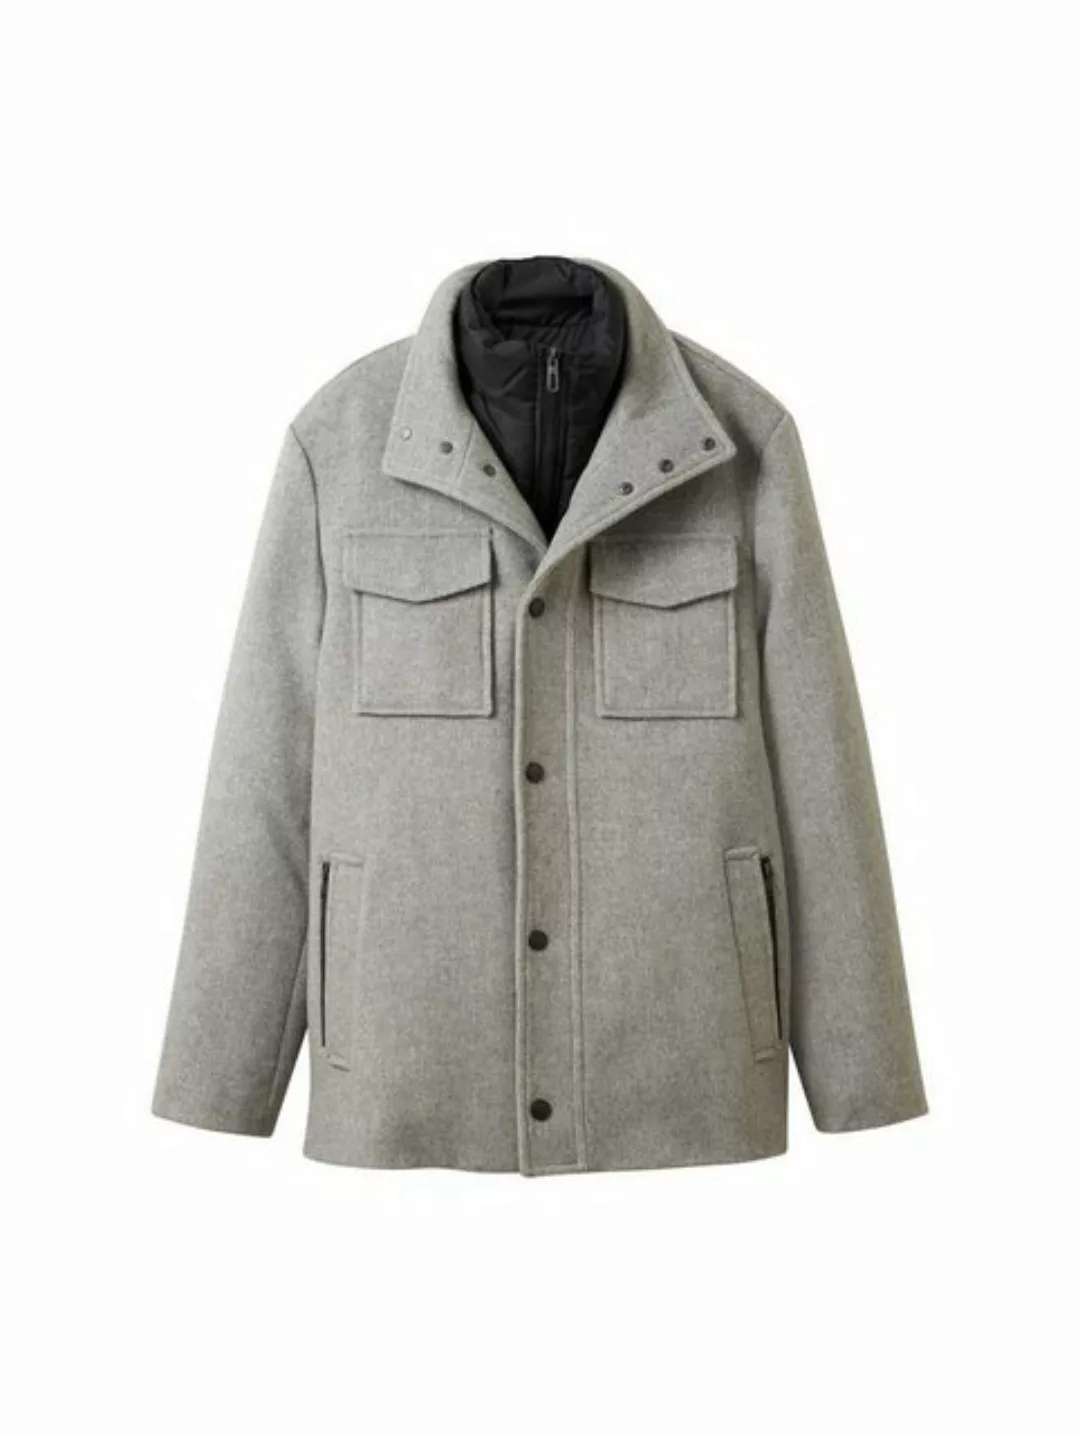 TOM TAILOR Outdoorjacke wool jacket 2 in 1 günstig online kaufen